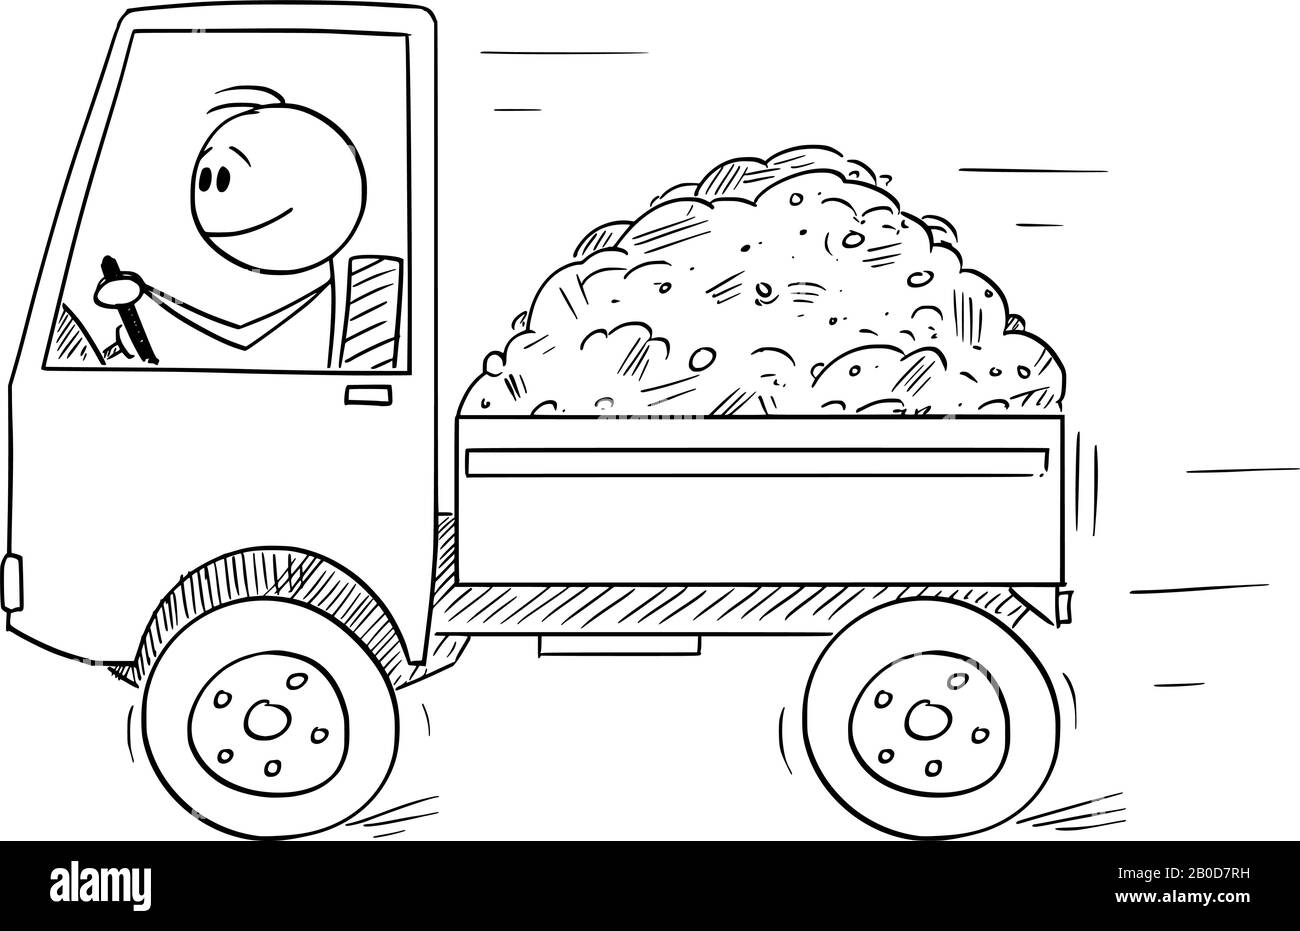 Vector Cartoon Stick Figure Zeichnung konzeptionelle Illustration von lächelnden Mann oder Fahrer mit einem kleinen LKW, der von Sand oder Erde beladen wird. Transport- oder Logistikkonzept. Stock Vektor